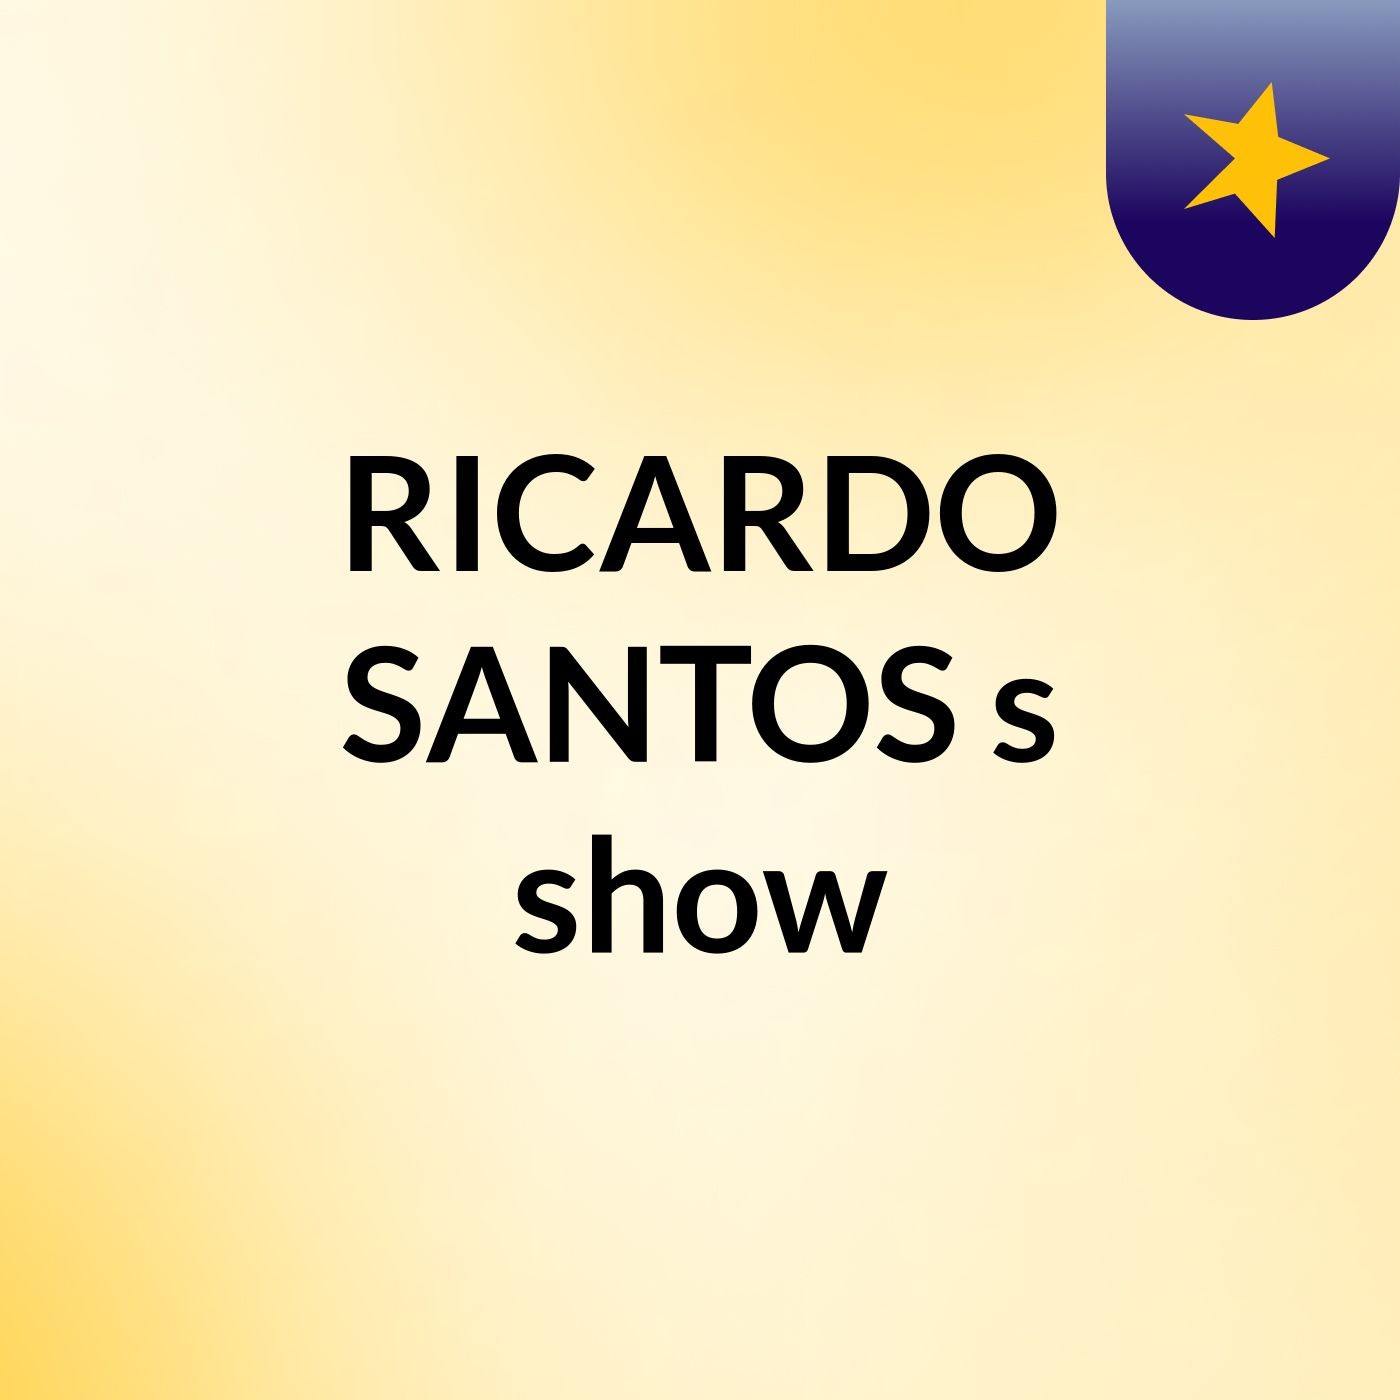 RICARDO SANTOS's show